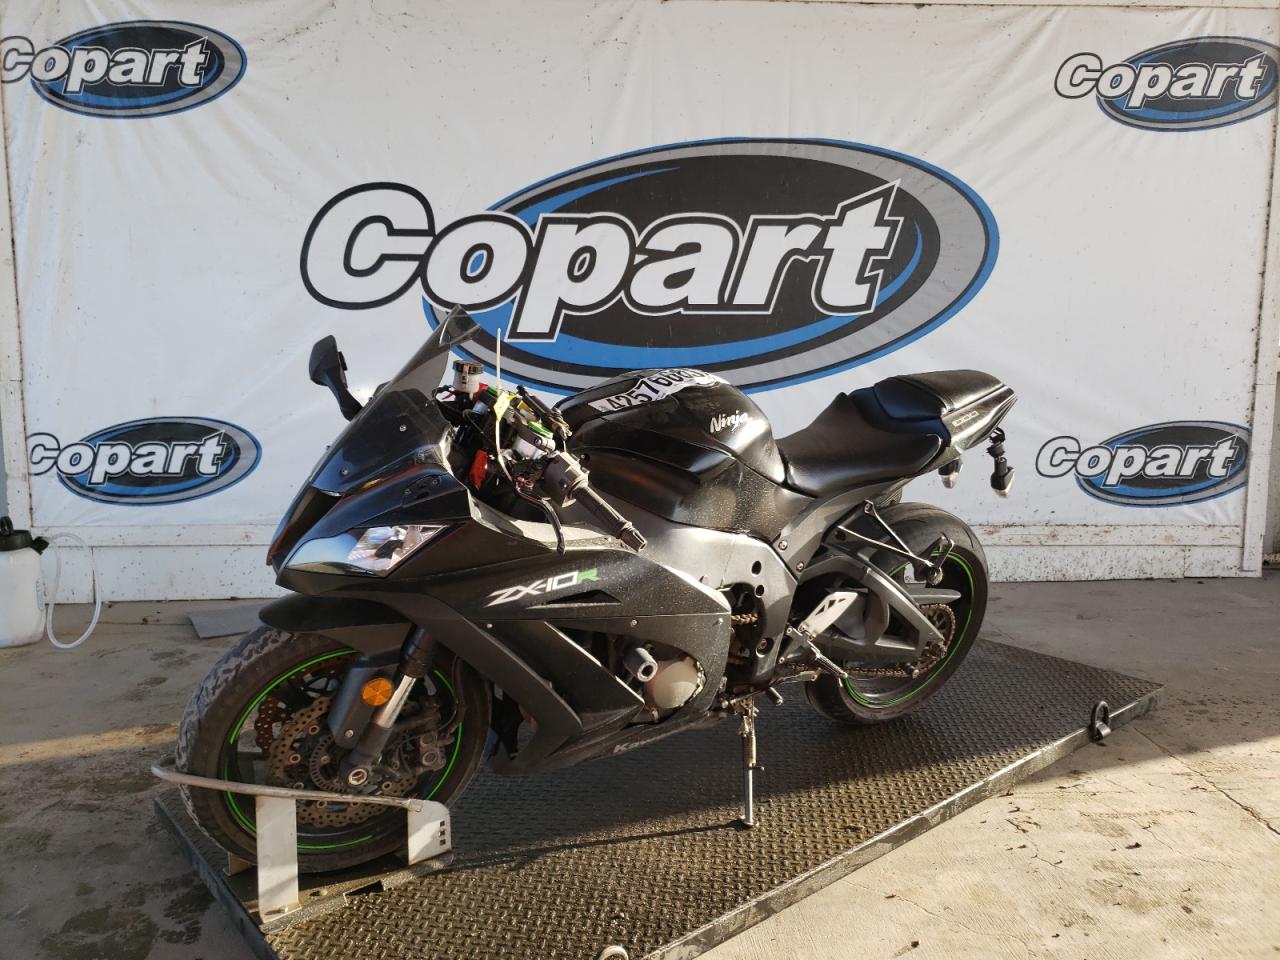 2015 Kawasaki ZX1000 J for sale at Copart Grand Prairie, TX. Lot 